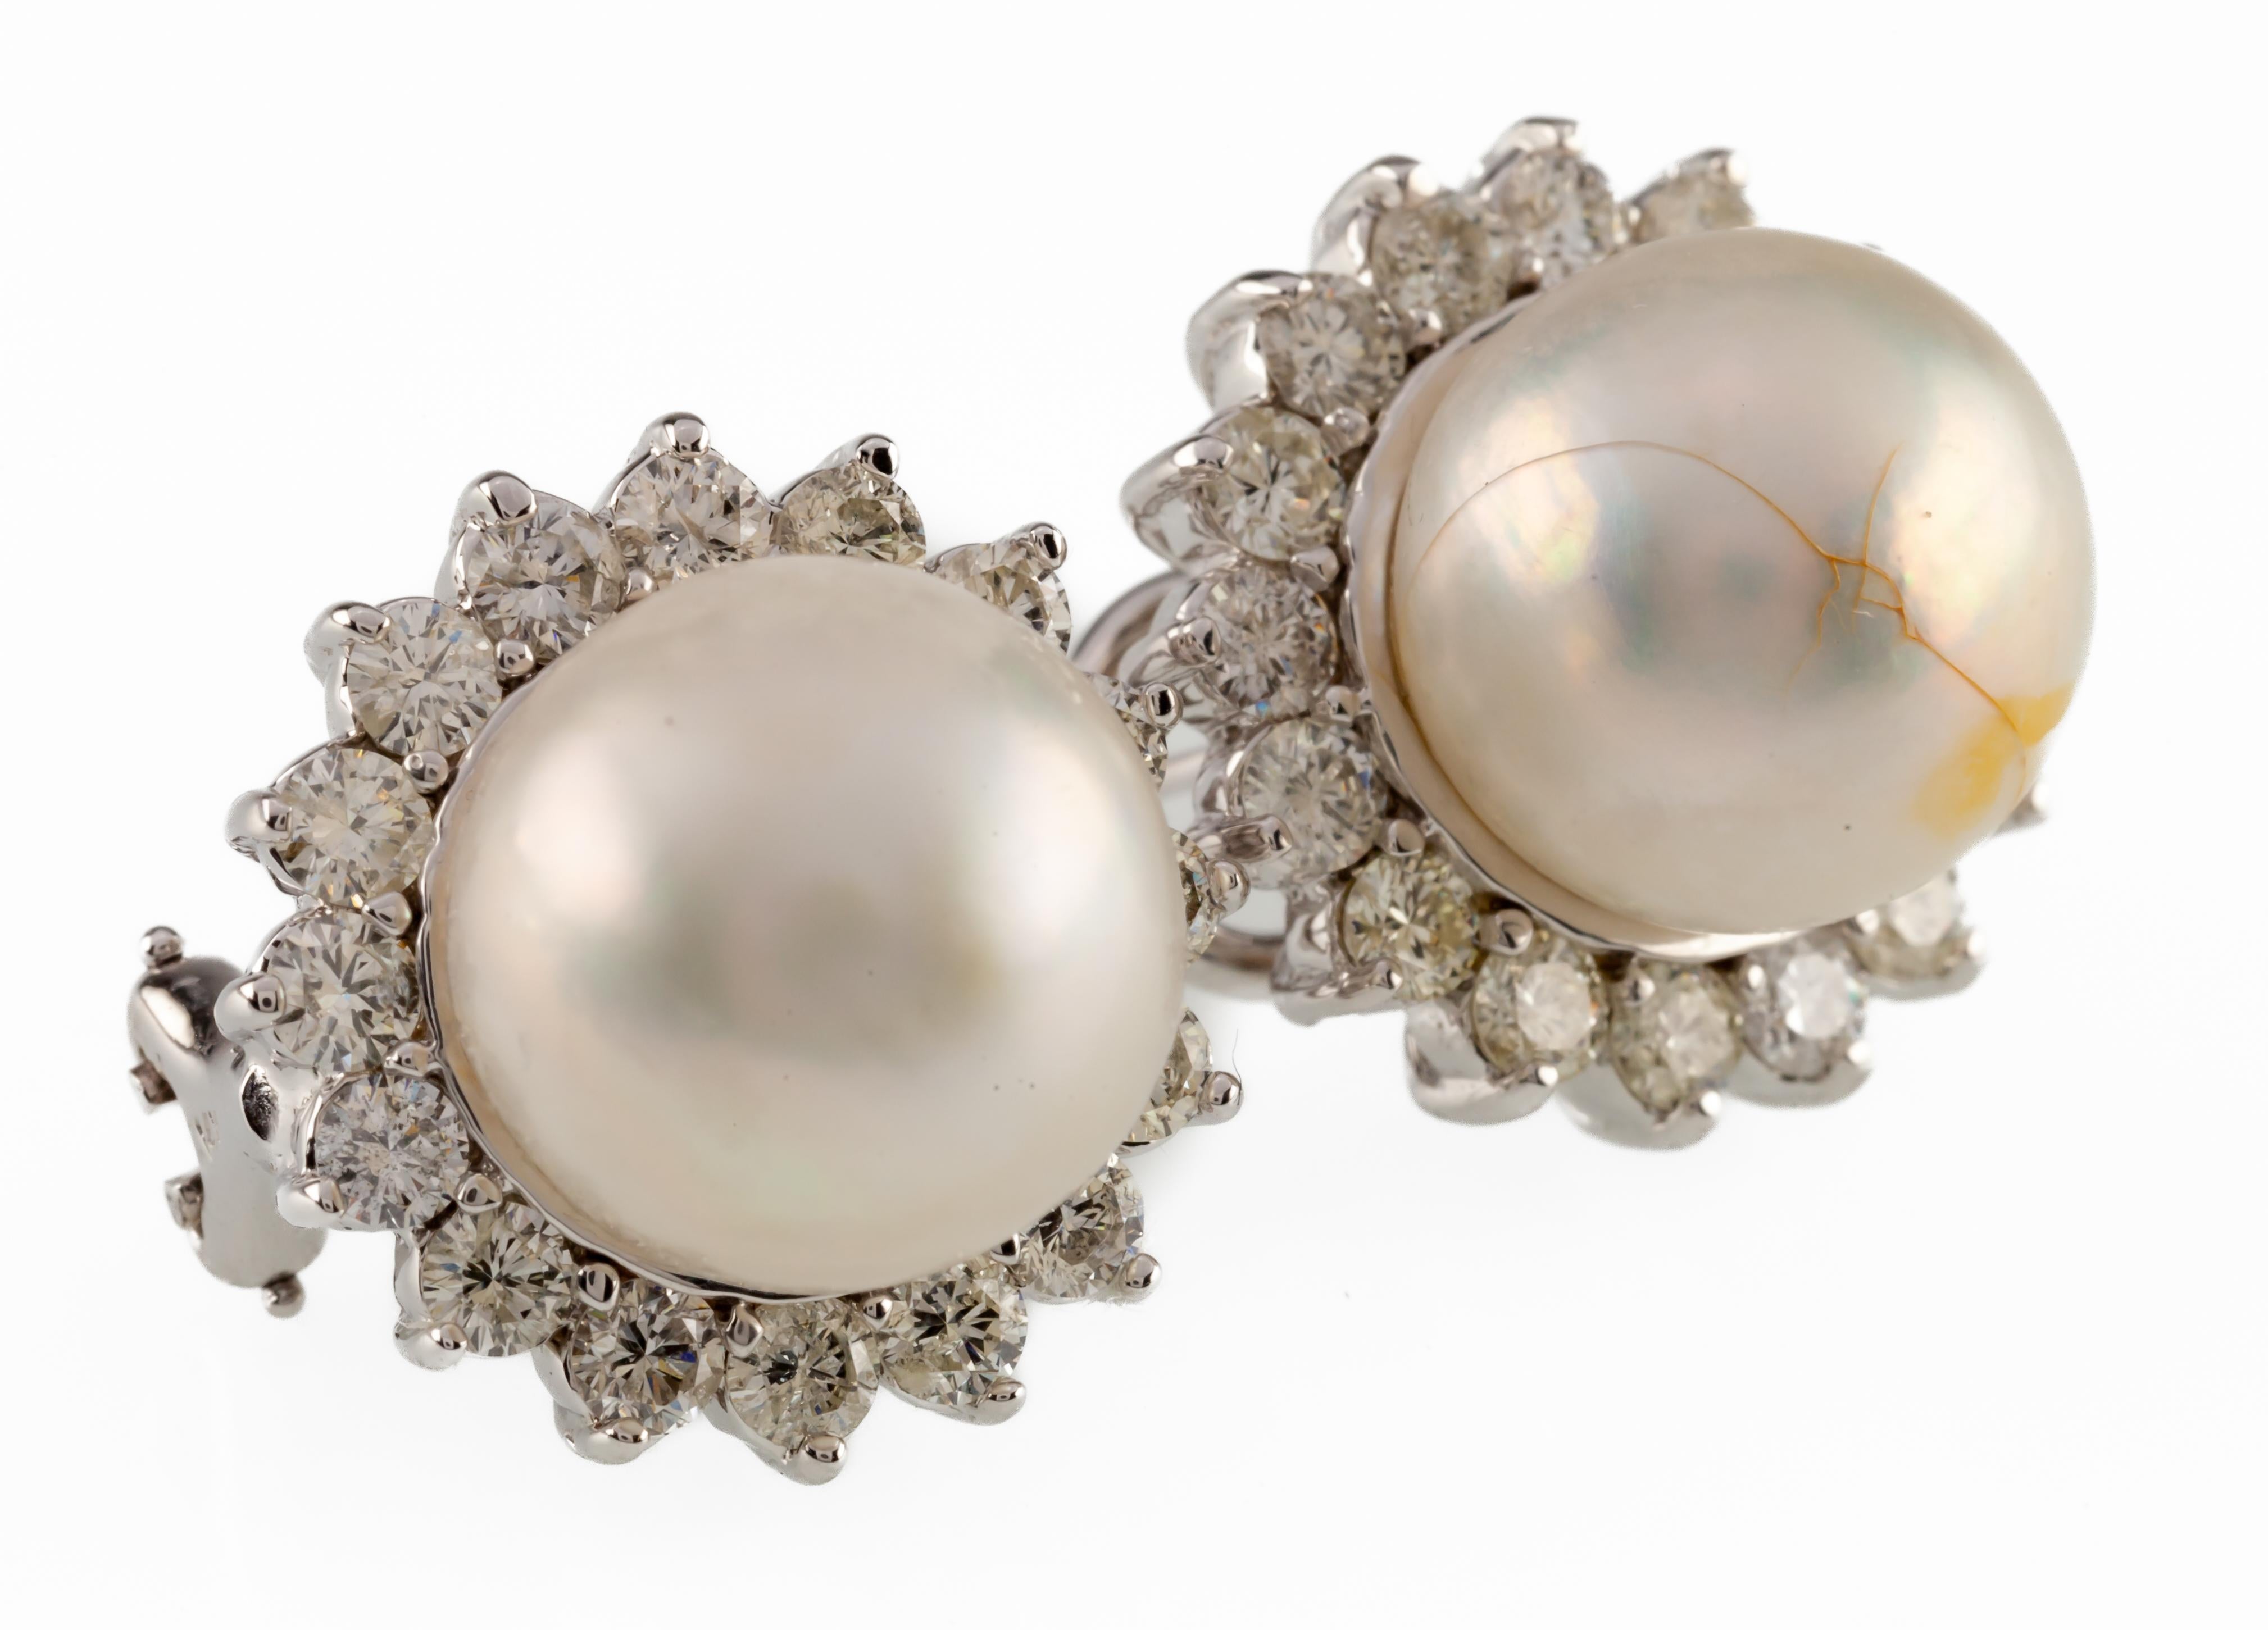 Ein Paar elektronisch geprüfte 14KT Weißgold gegossen & montiert Südsee-Zuchtperle & Diamant-Ohrringe mit Omega-Backs.
Jeder Ohrring besteht aus einer Südsee-Zuchtperle, die in eine Galerie aus Diamanten eingefasst ist.
Hochglanzpolierte